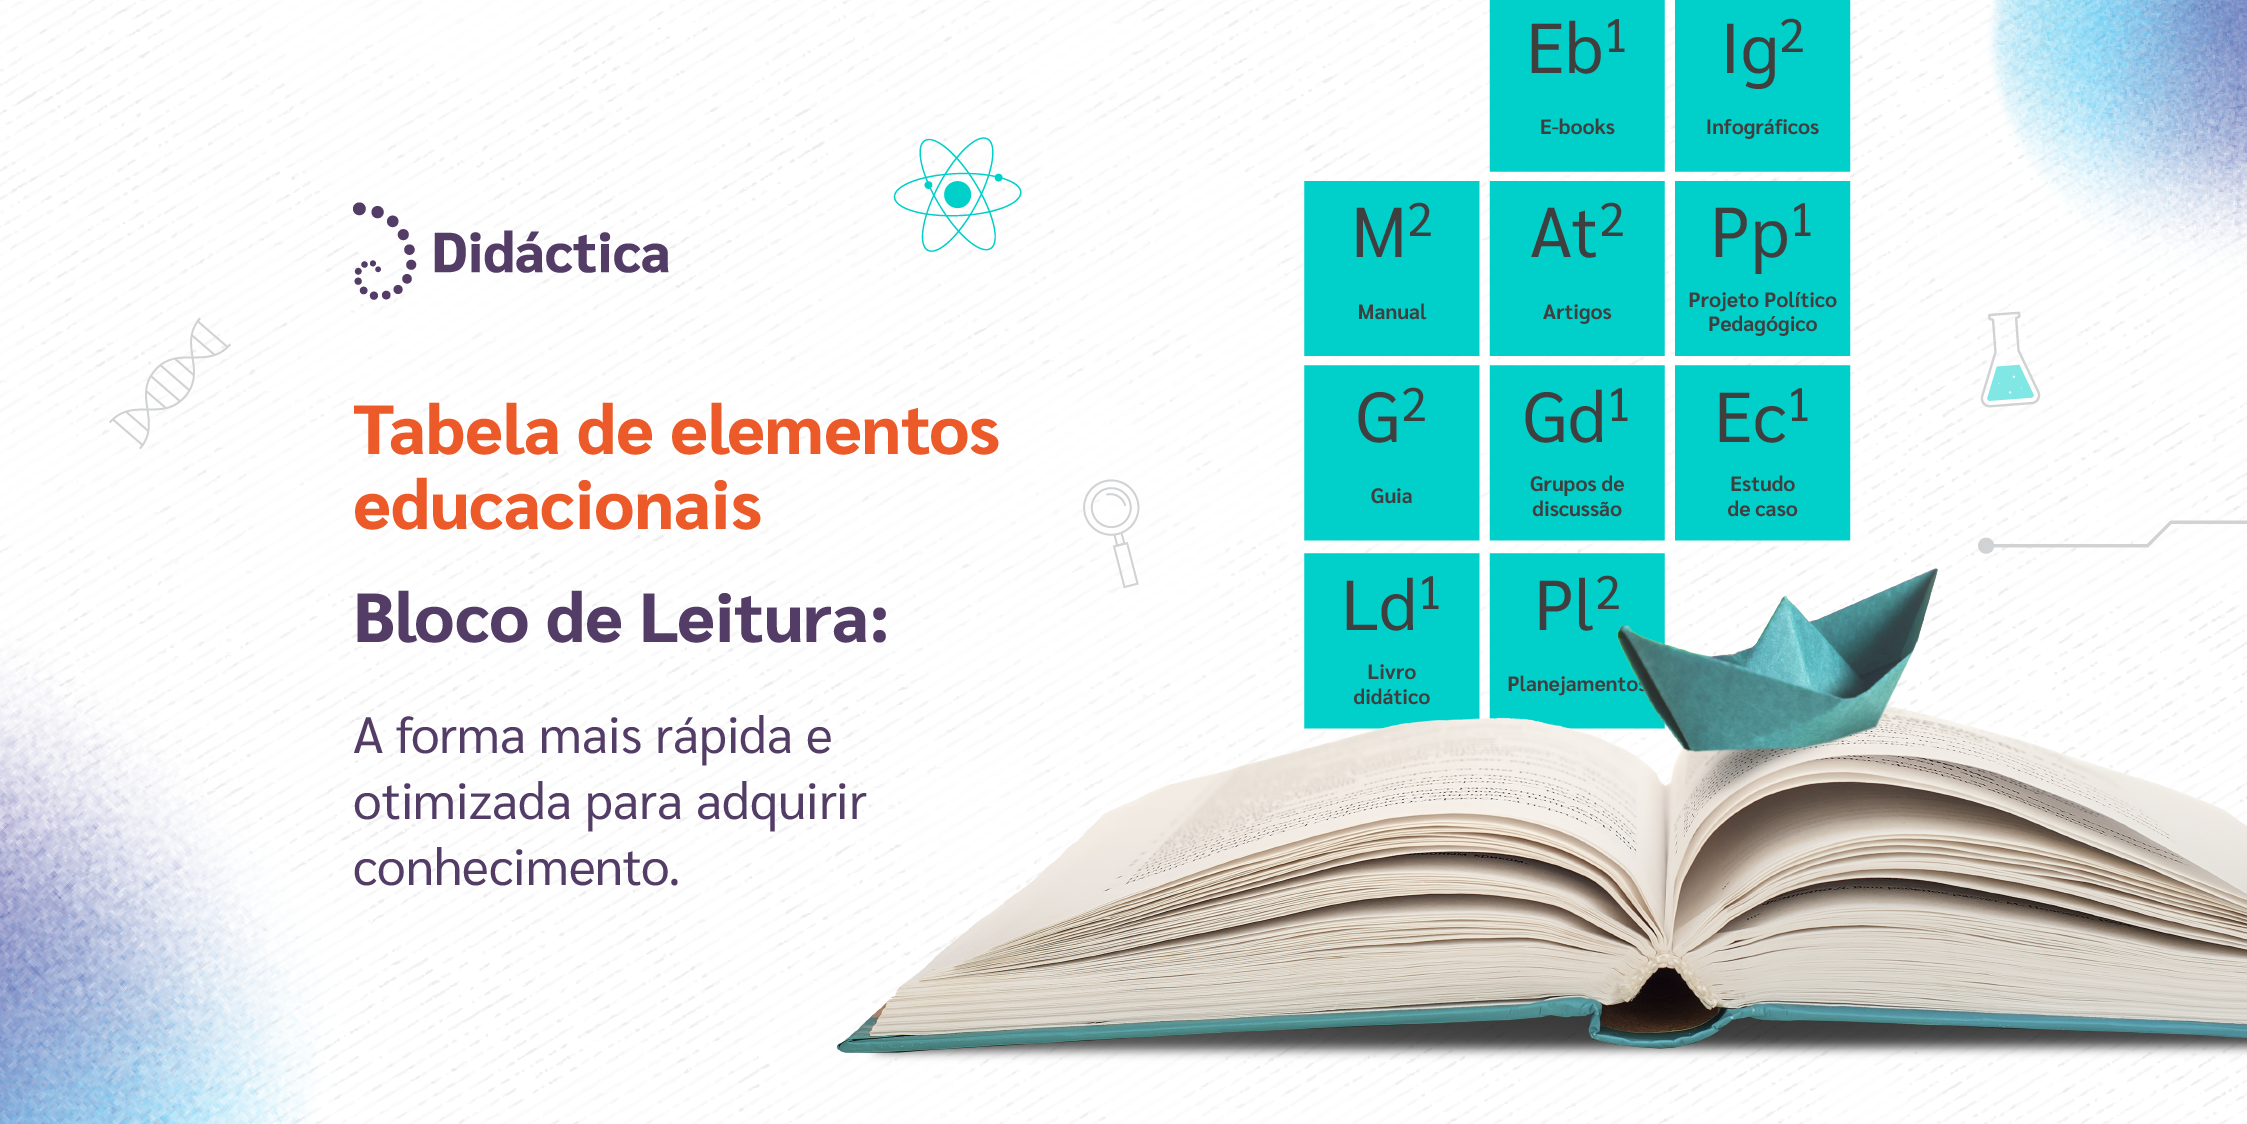 [Tabela de elementos educacionais] Bloco de Leitura: A forma mais rápida e otimizada para adquirir conhecimento